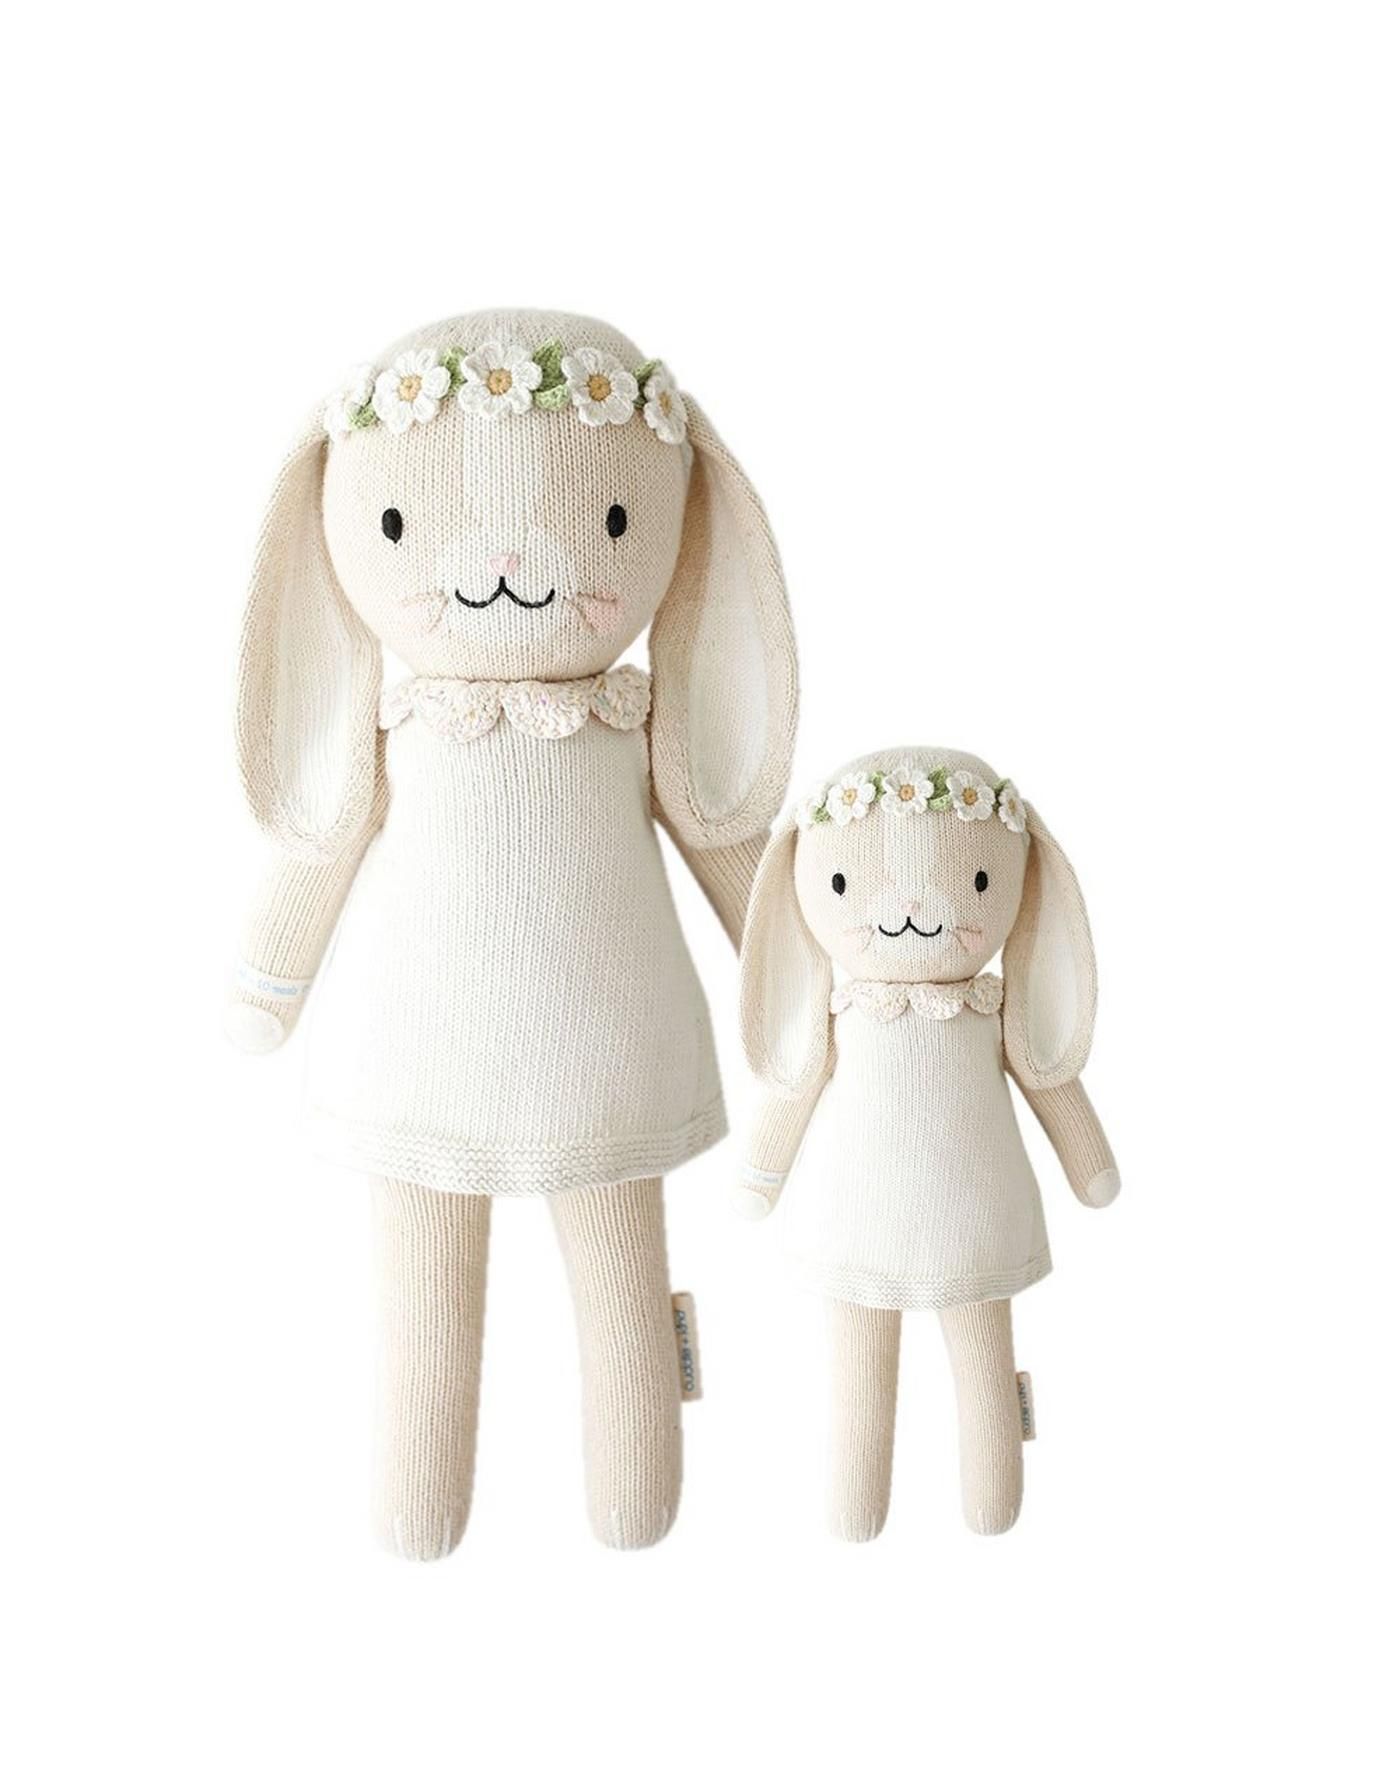 Cuddle + Kind Small Hannah Bunny Doll | Janie and Jack